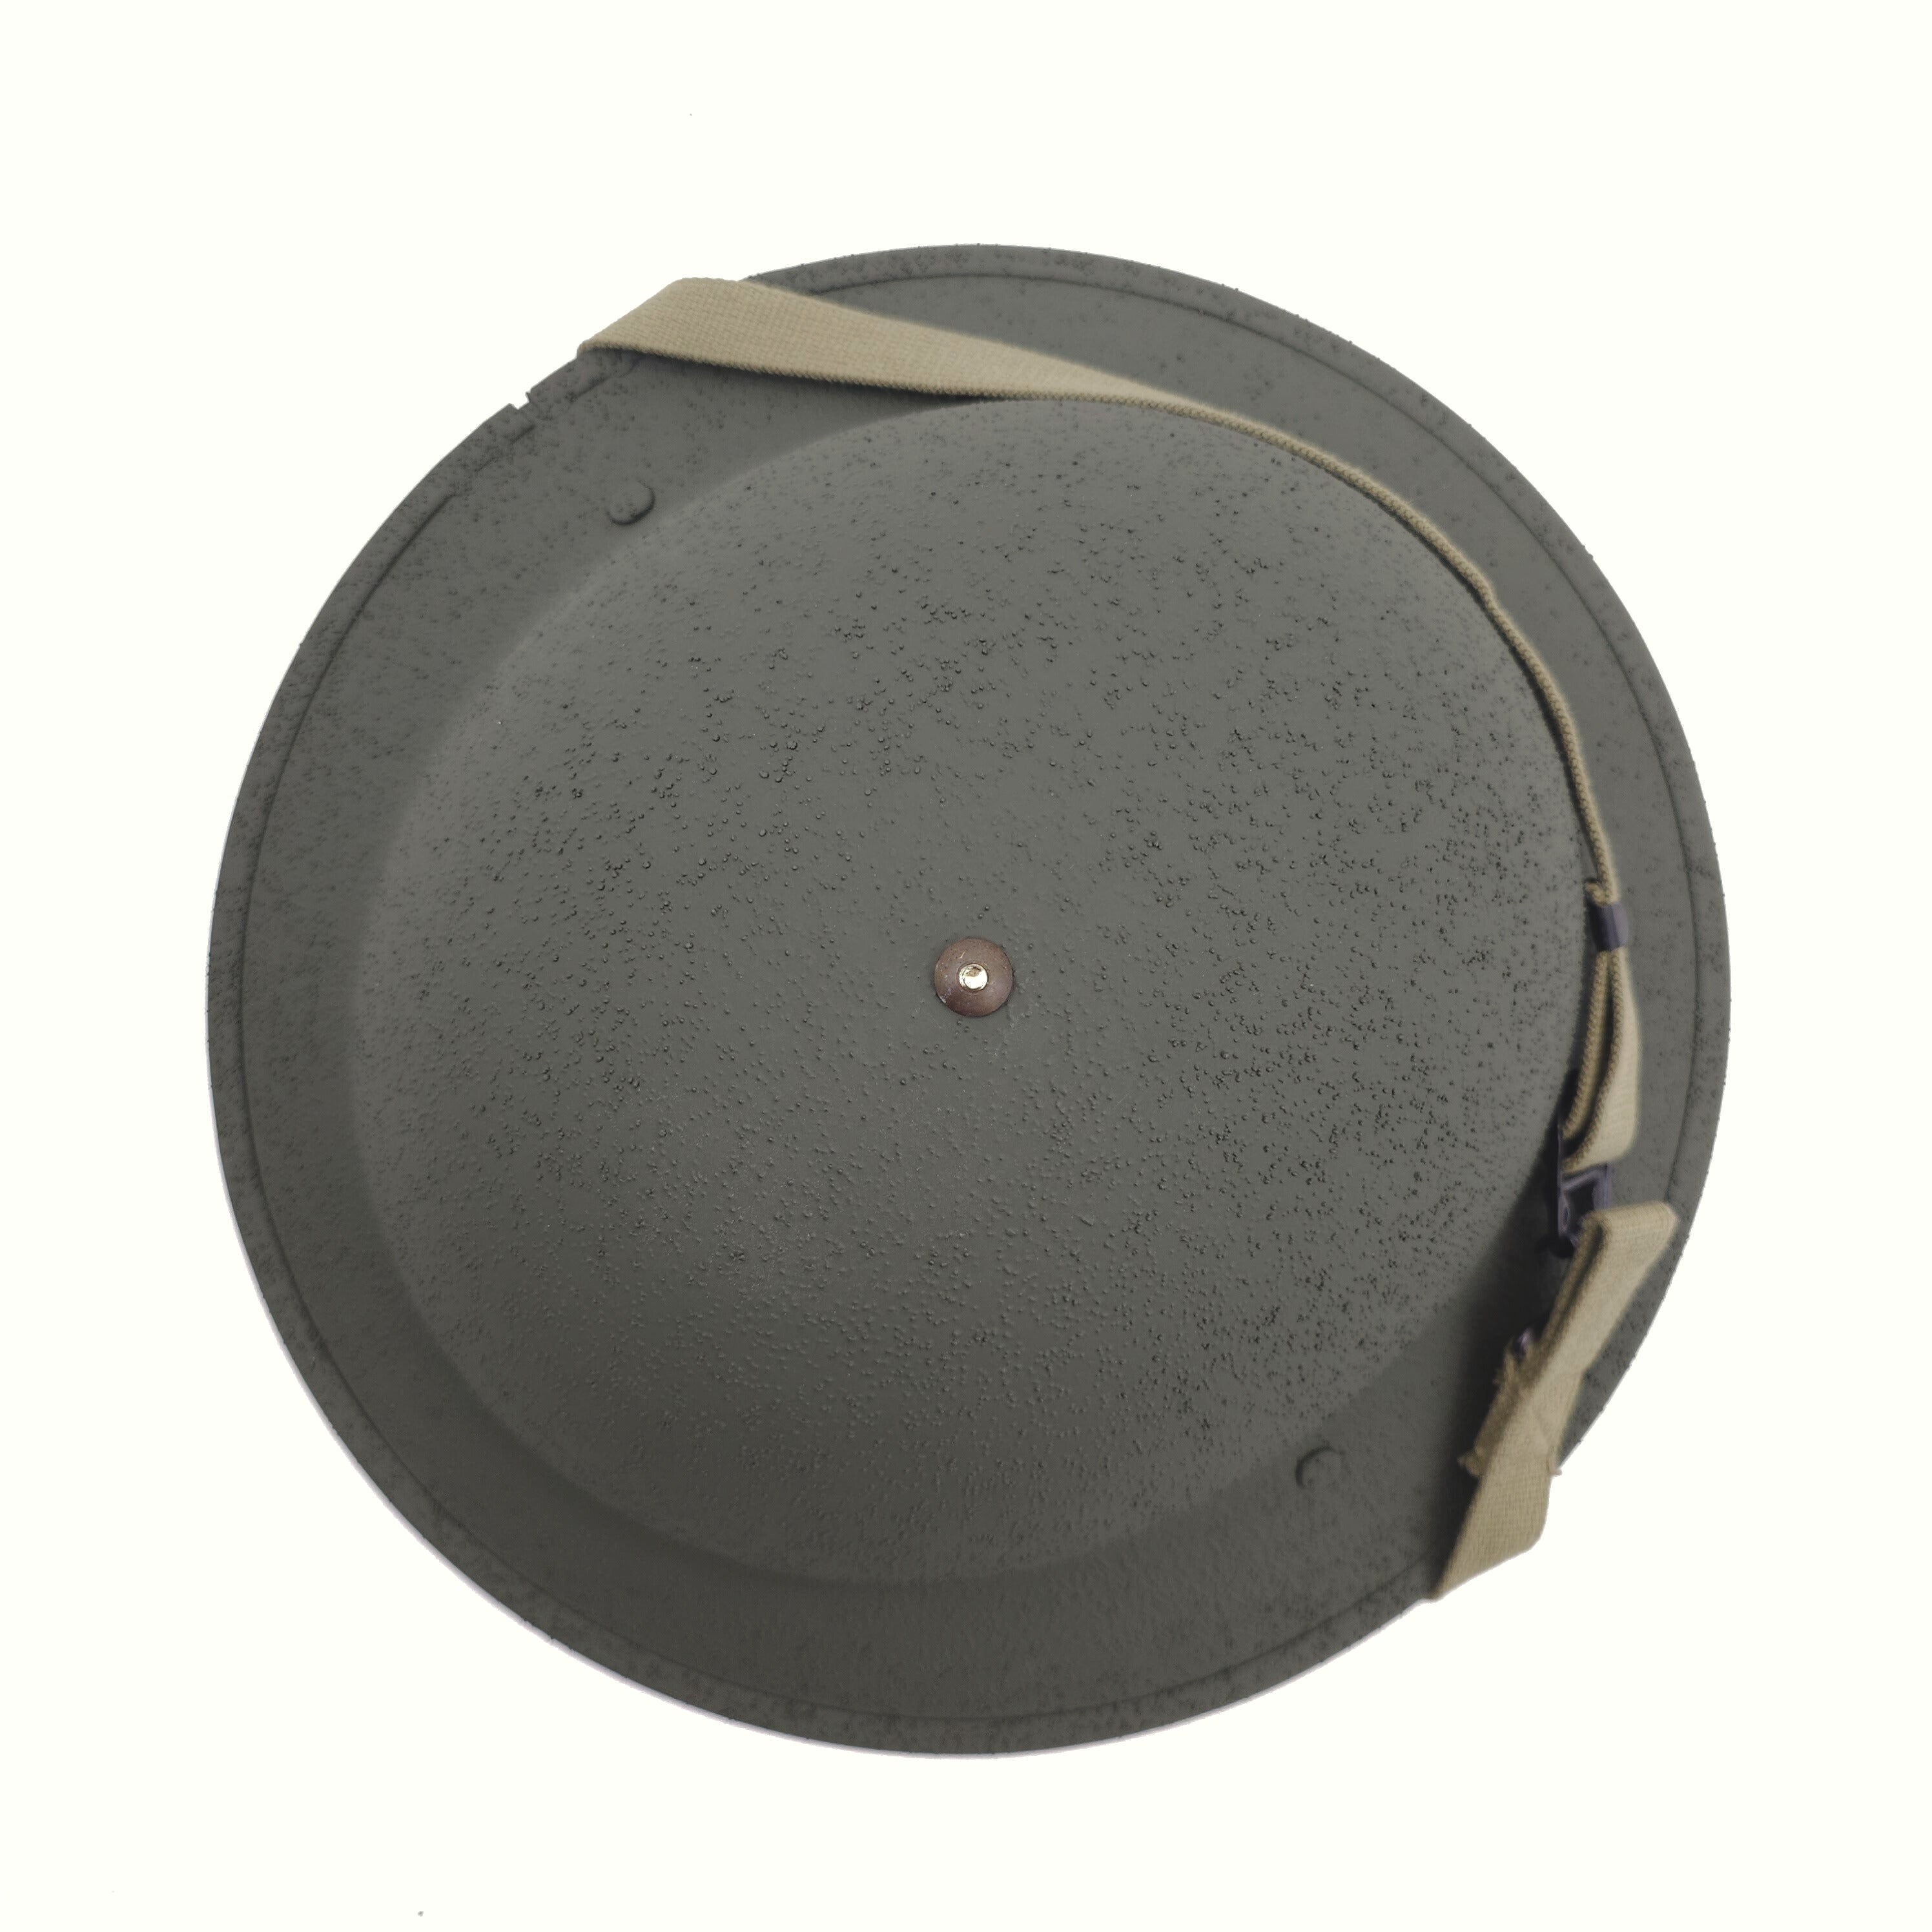 Helm aus dem Zweiten Weltkrieg – M1917A1 – komplett